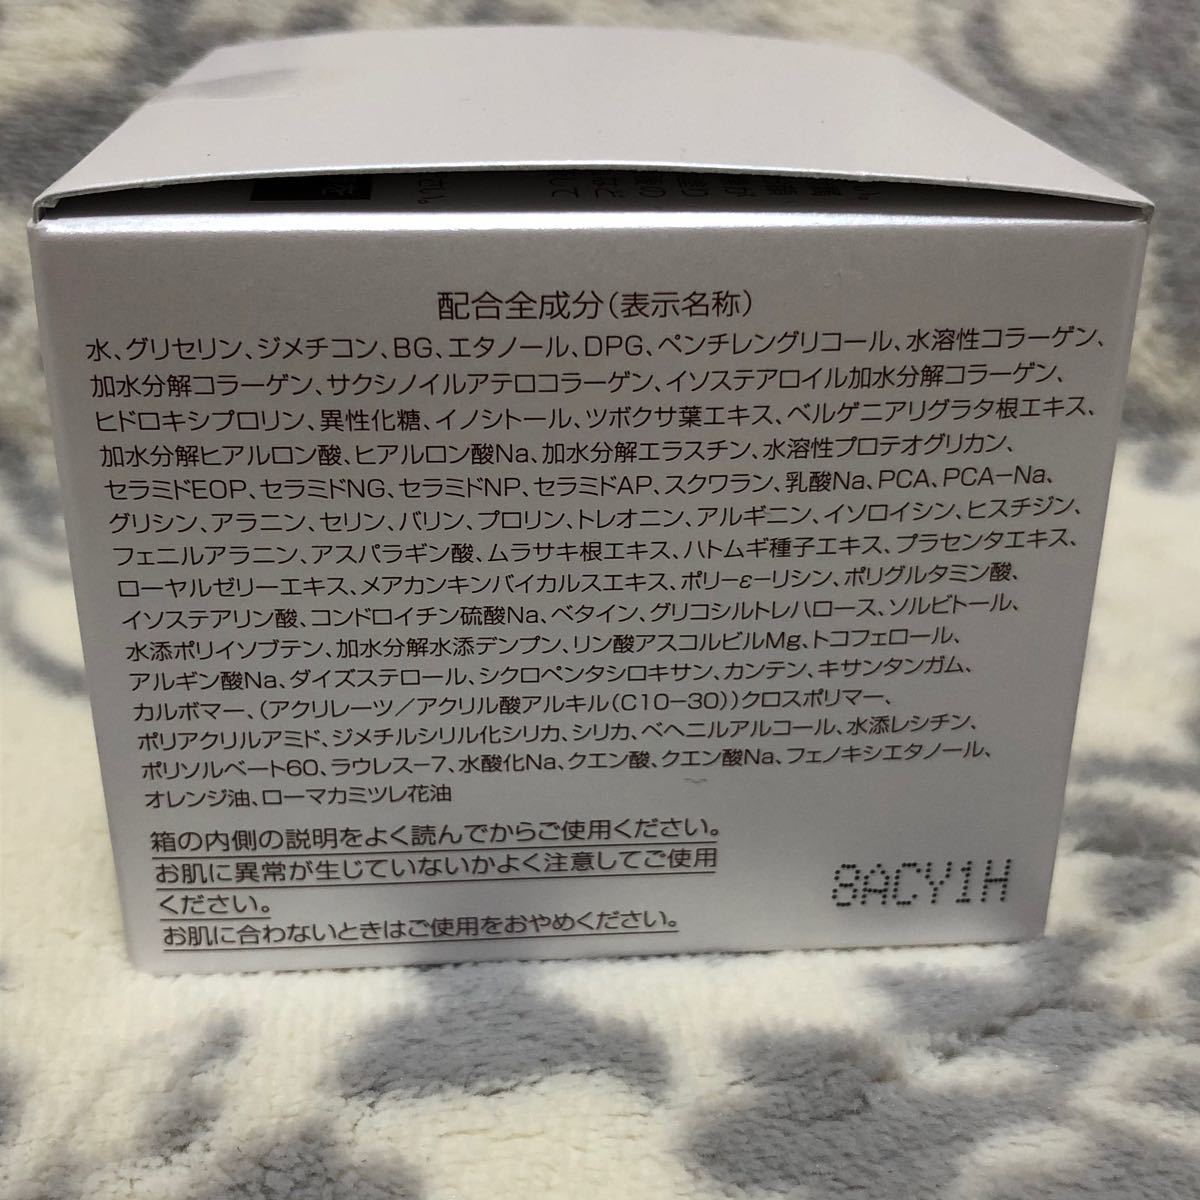 パーフェクトワン モイスチャージェル 75g 2個セット / 新日本製薬 / オールインワンゲル 乳液 クリーム 美容液 